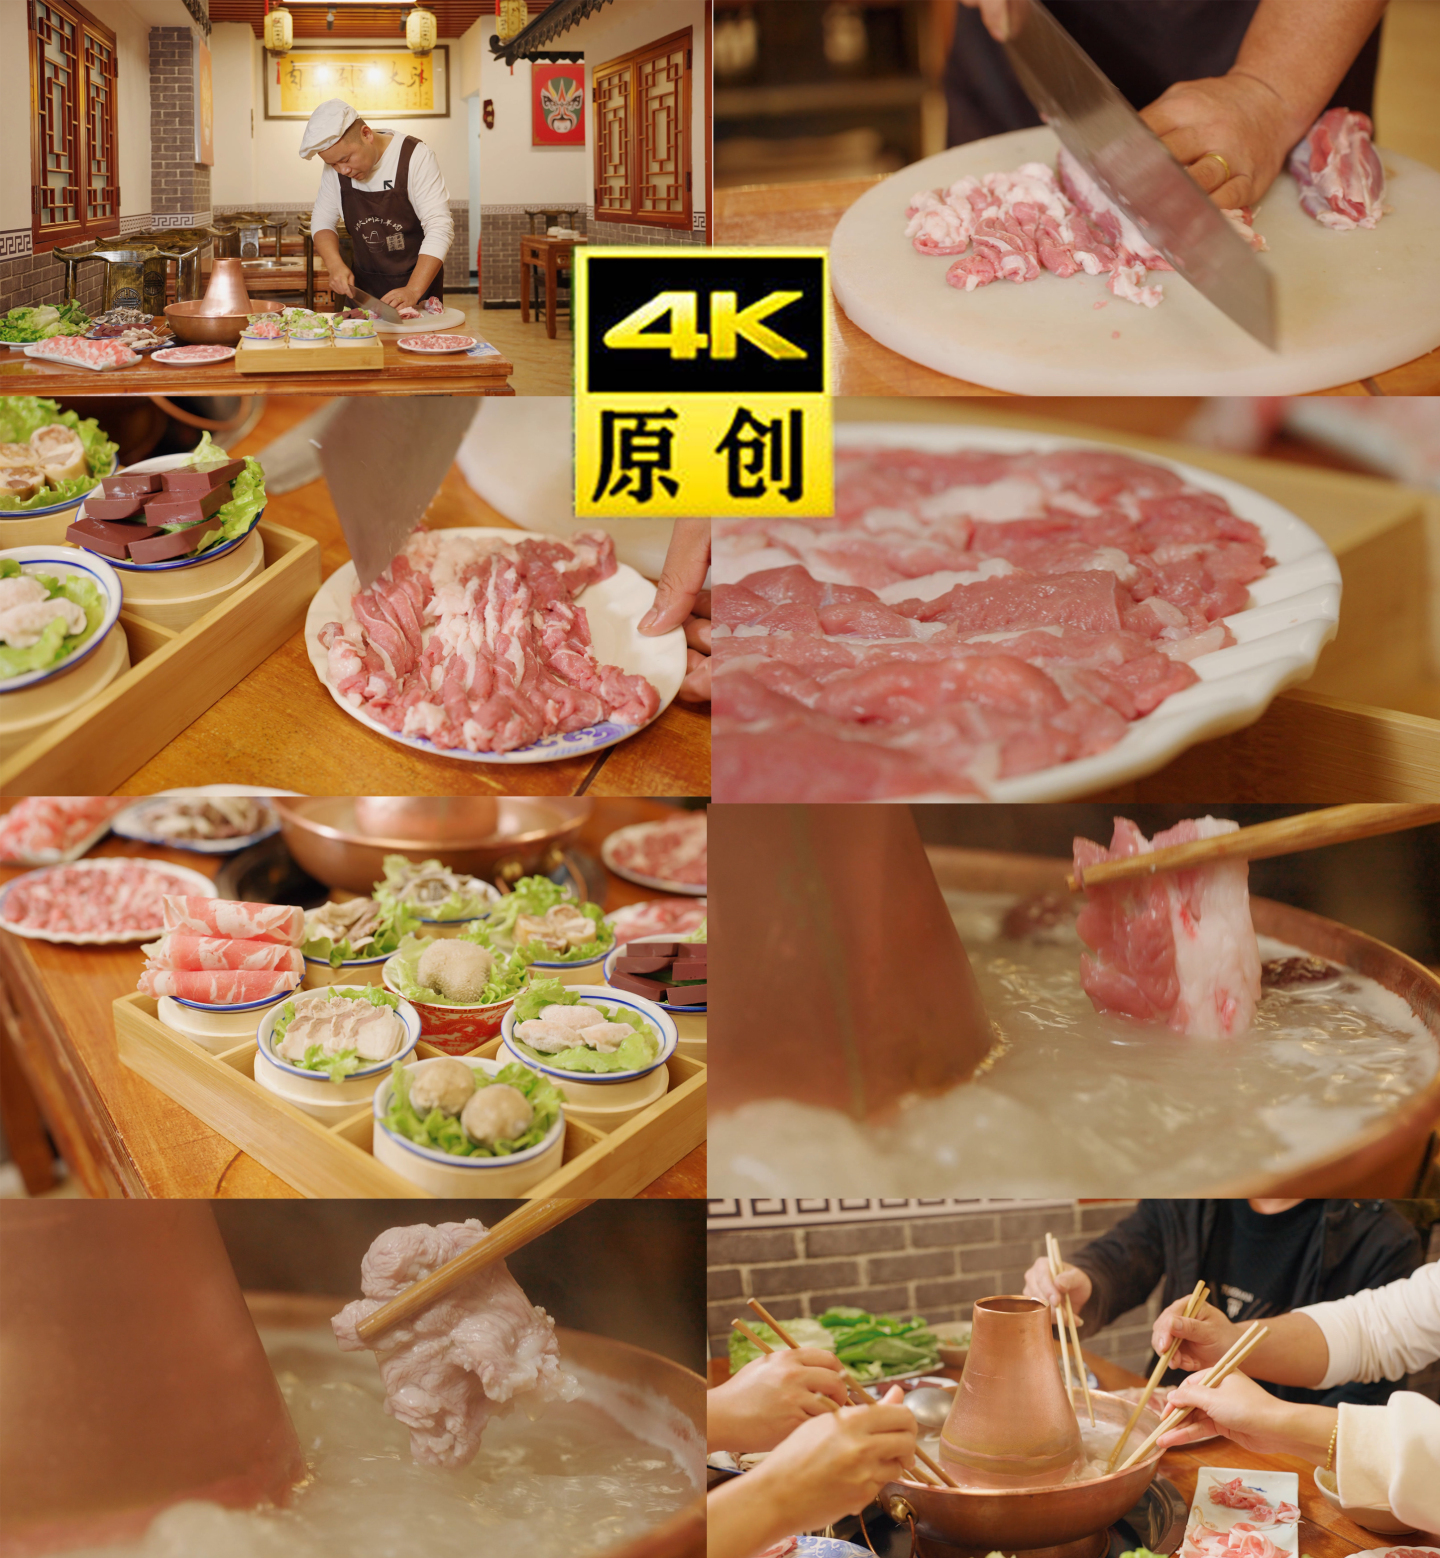 4K 涮羊肉